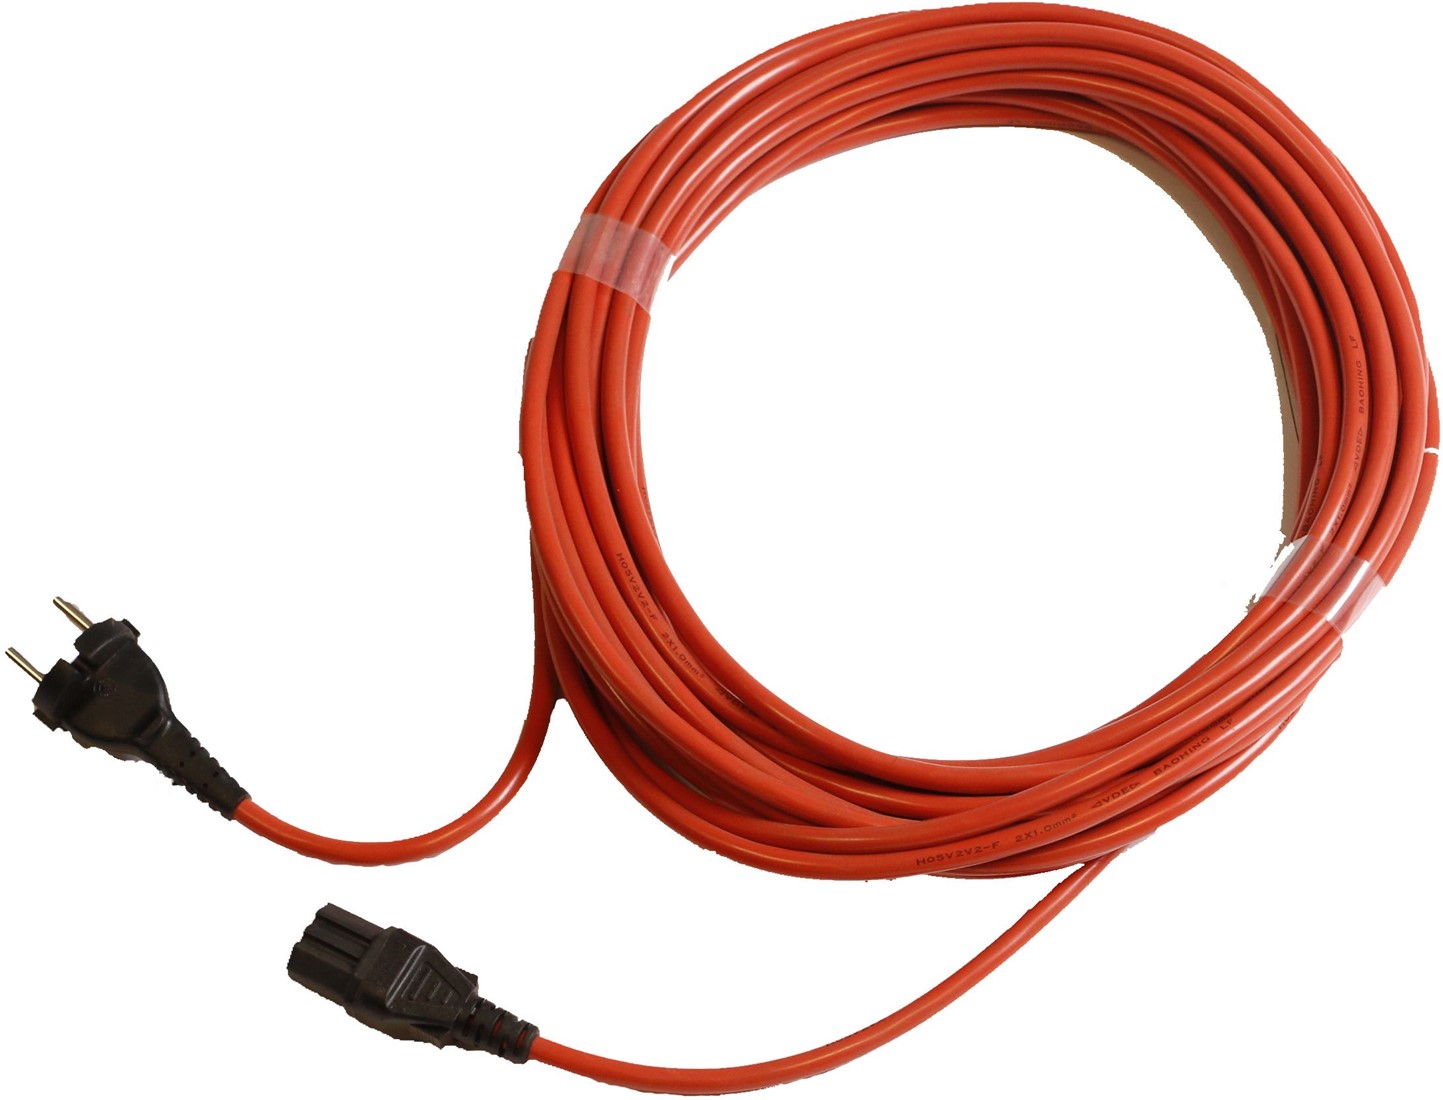 Bijdrage nauwelijks deuropening Numatic 12.5 mtr. 1mm x 2 aderig oranje kabel HD (PPR Plugged) Gejoma: Uw  groothandel in schoonmaakartikelen